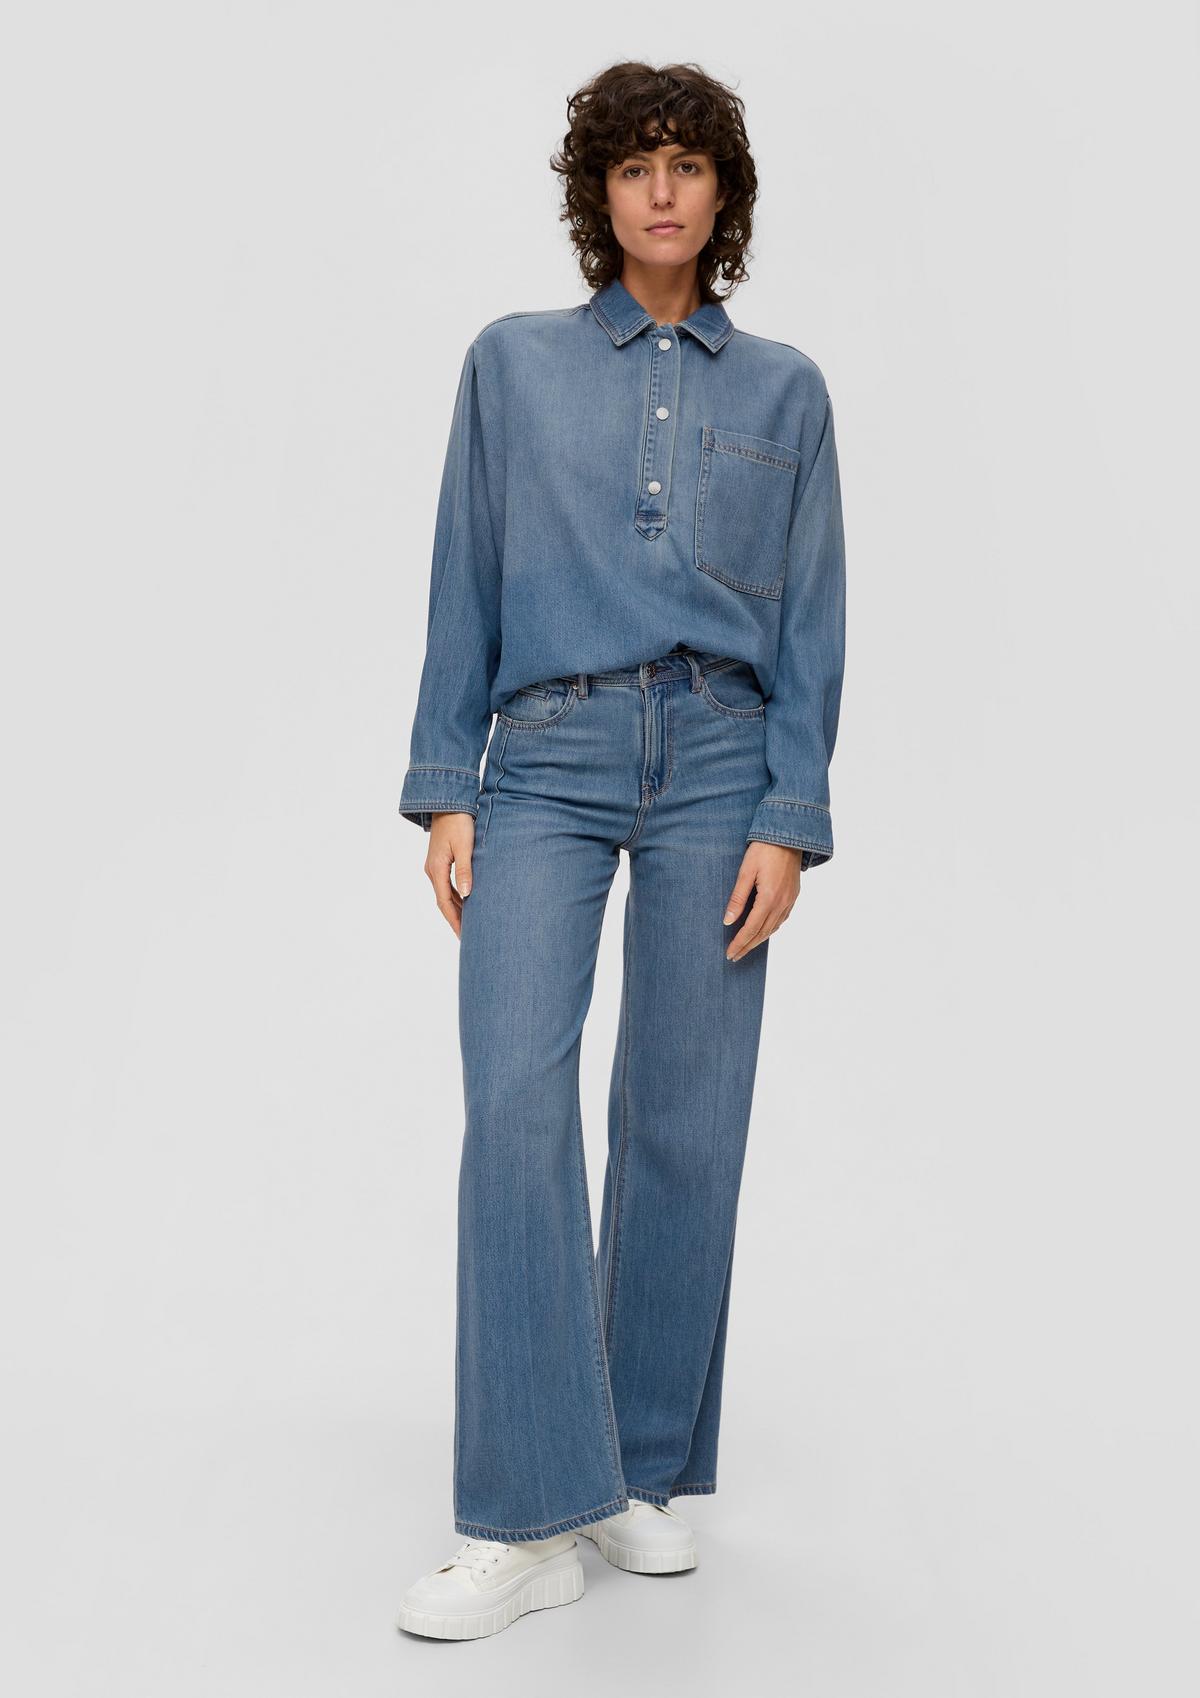 Jeans für Damen bequem online kaufen